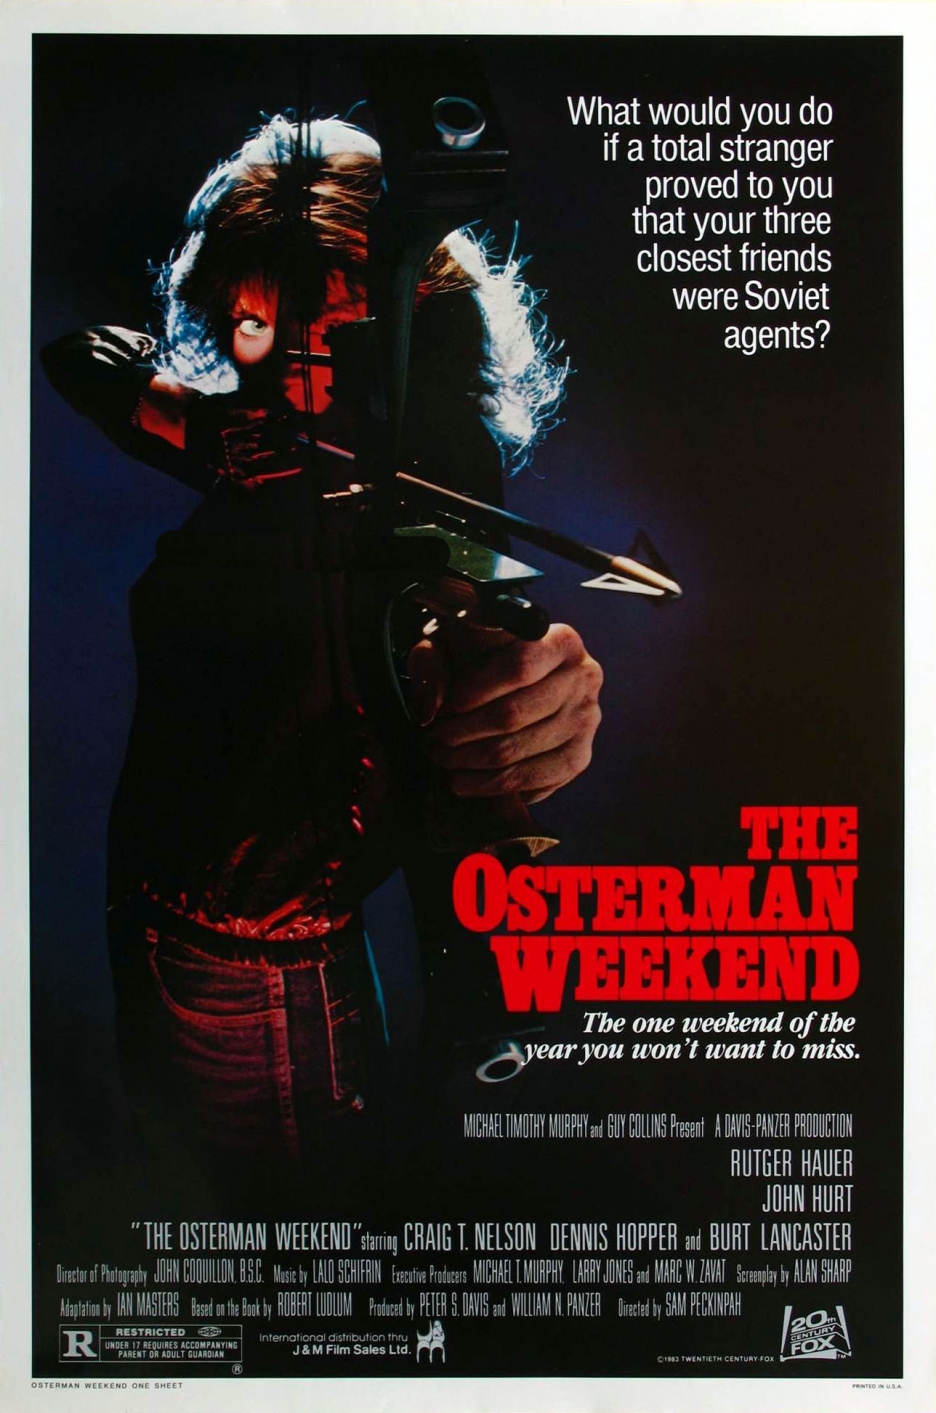 Nonton film The Osterman Weekend layarkaca21 indoxx1 ganool online streaming terbaru